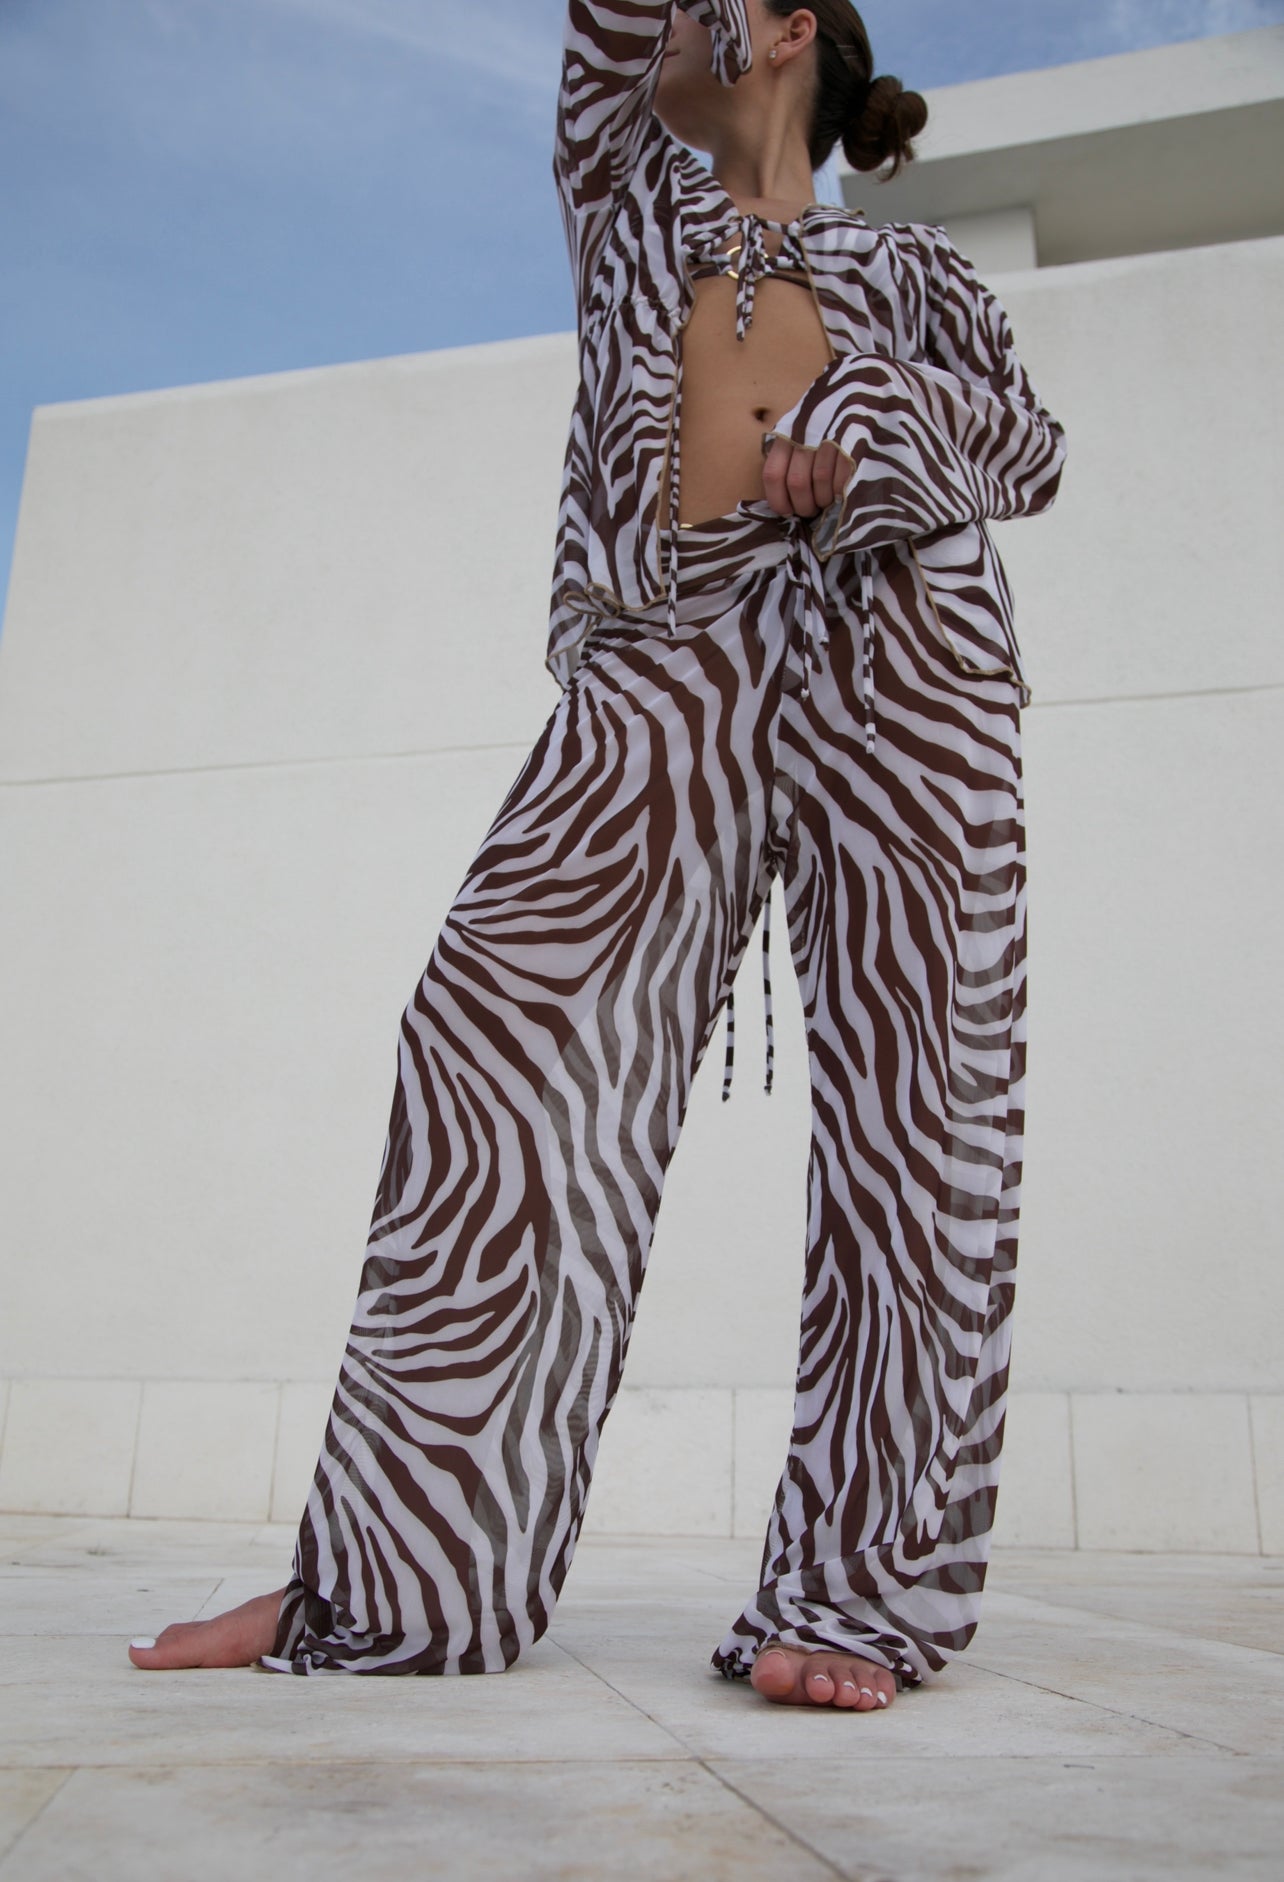 Nani Trousers - Brown Zebra